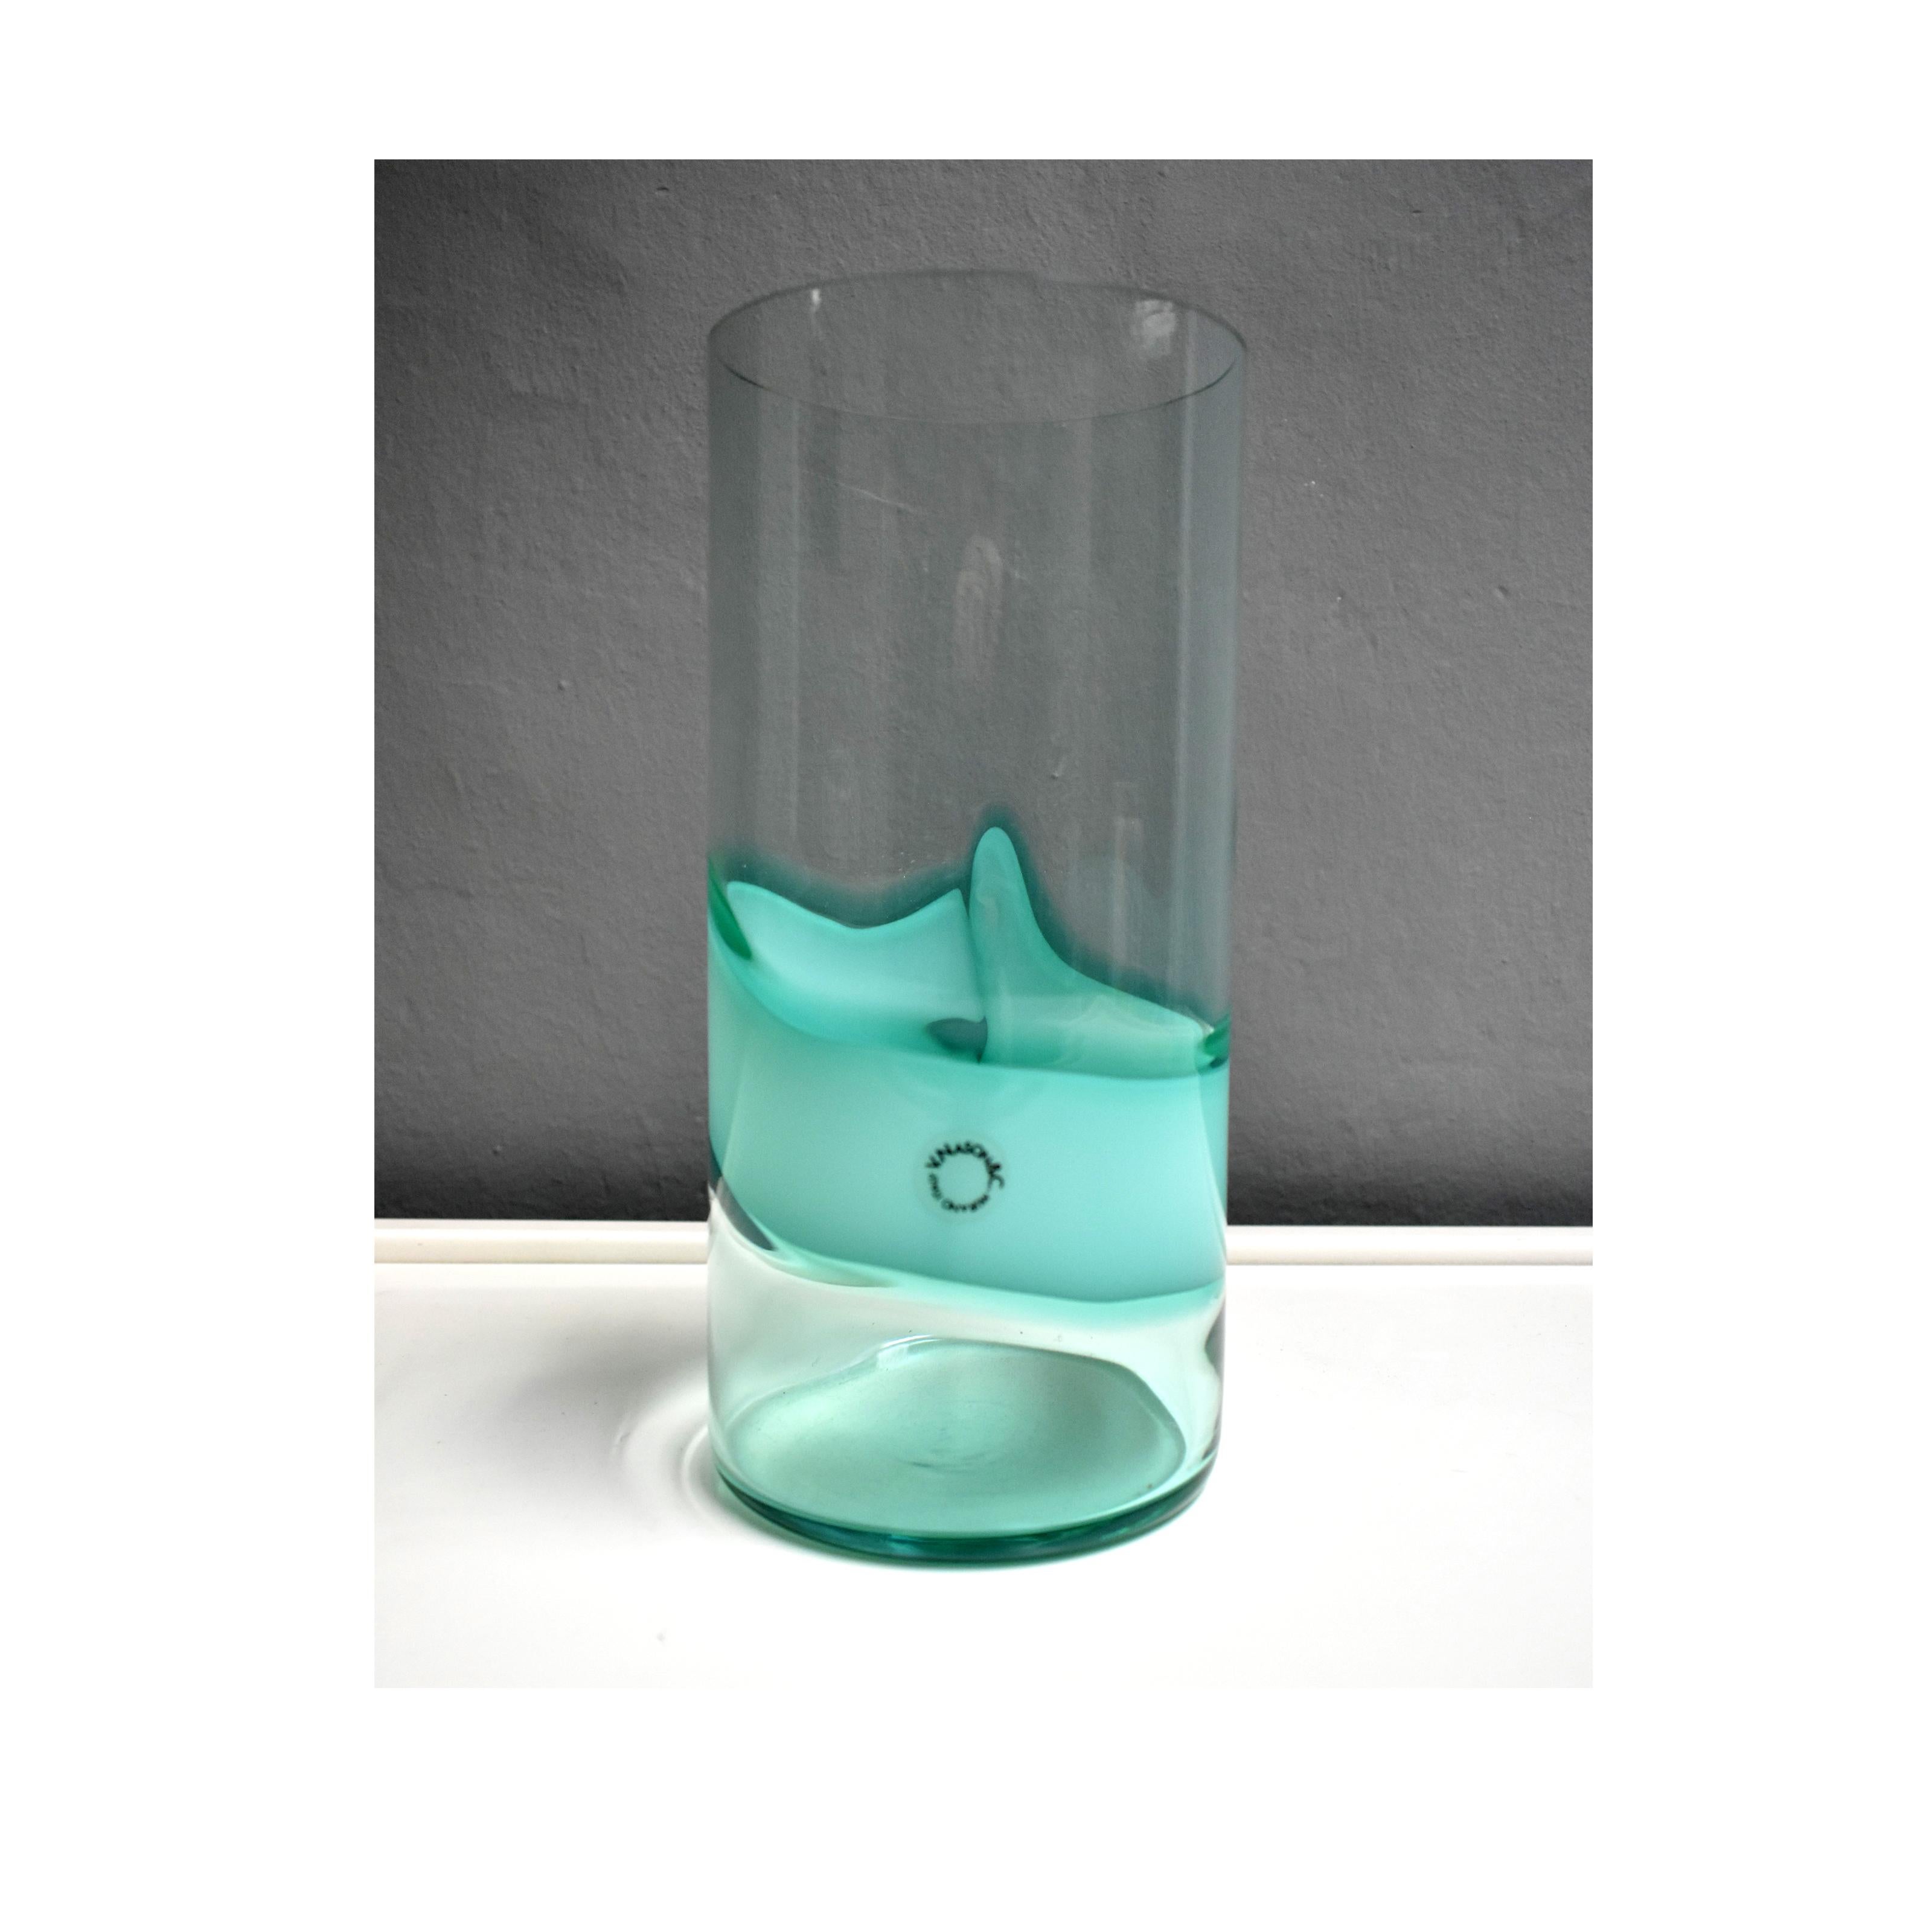 Murano-Glasvase, hergestellt von V.Nason & C.
Die zylindrische Vase aus transparentem Glas und blauem Meerwasser hat ein Design, auf dem das Echtheitszeichen noch vorhanden ist
Maßnahmen
Durchmesser 12cm x 26cm Höhe
Sehr guter Zustand.